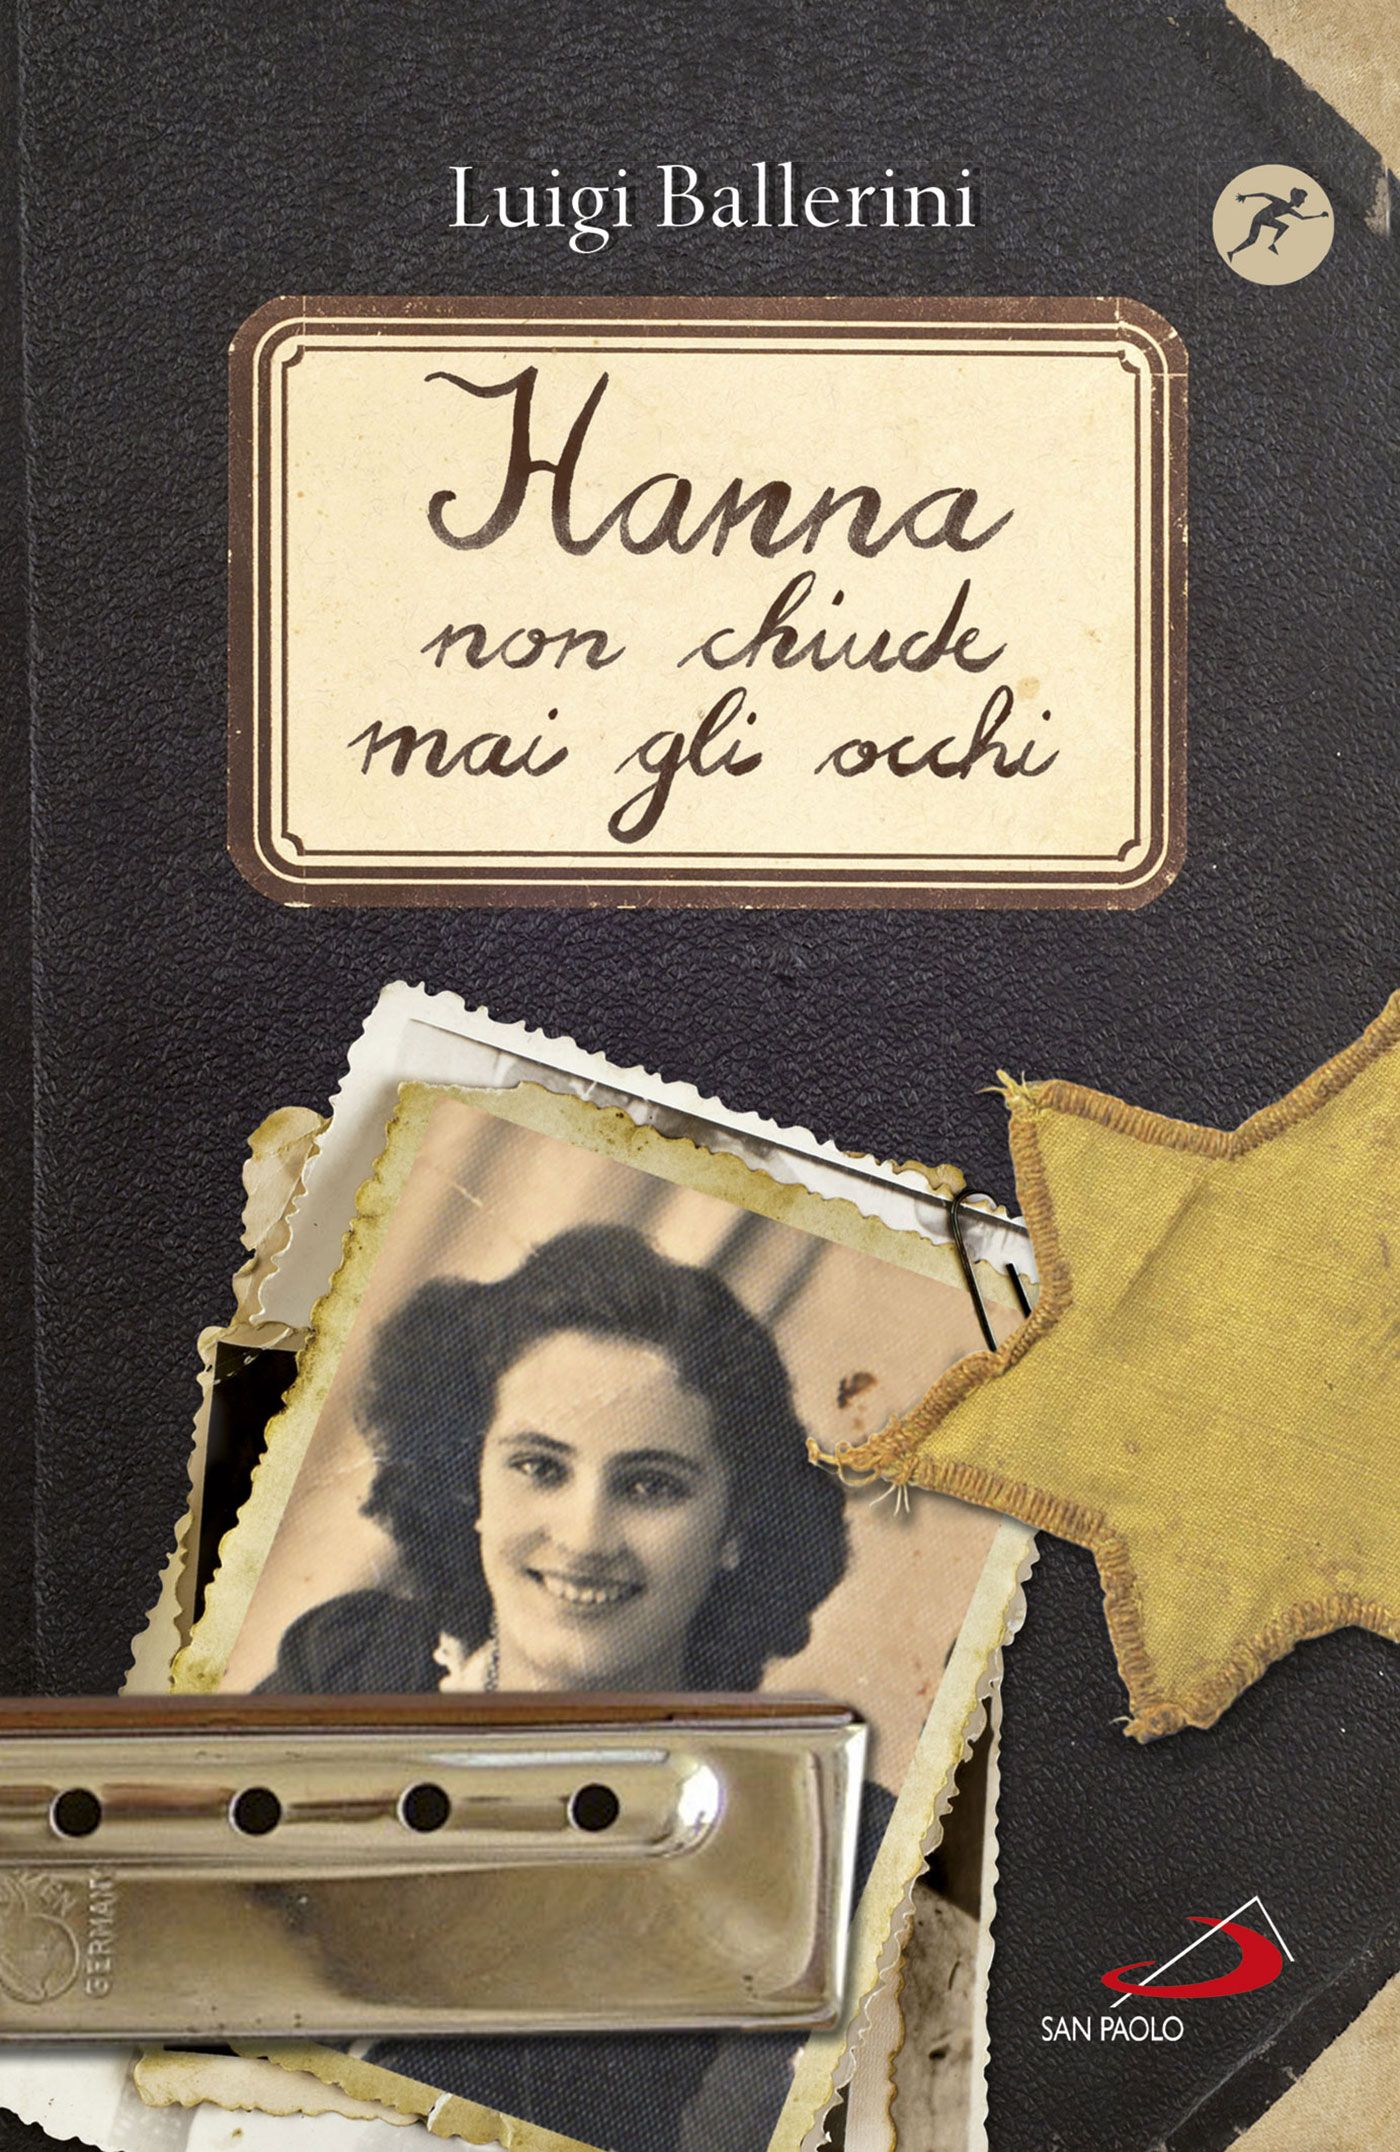 Il nuovo libro di Luigi Ballerini "Hanna non chiude mai gli occhi"